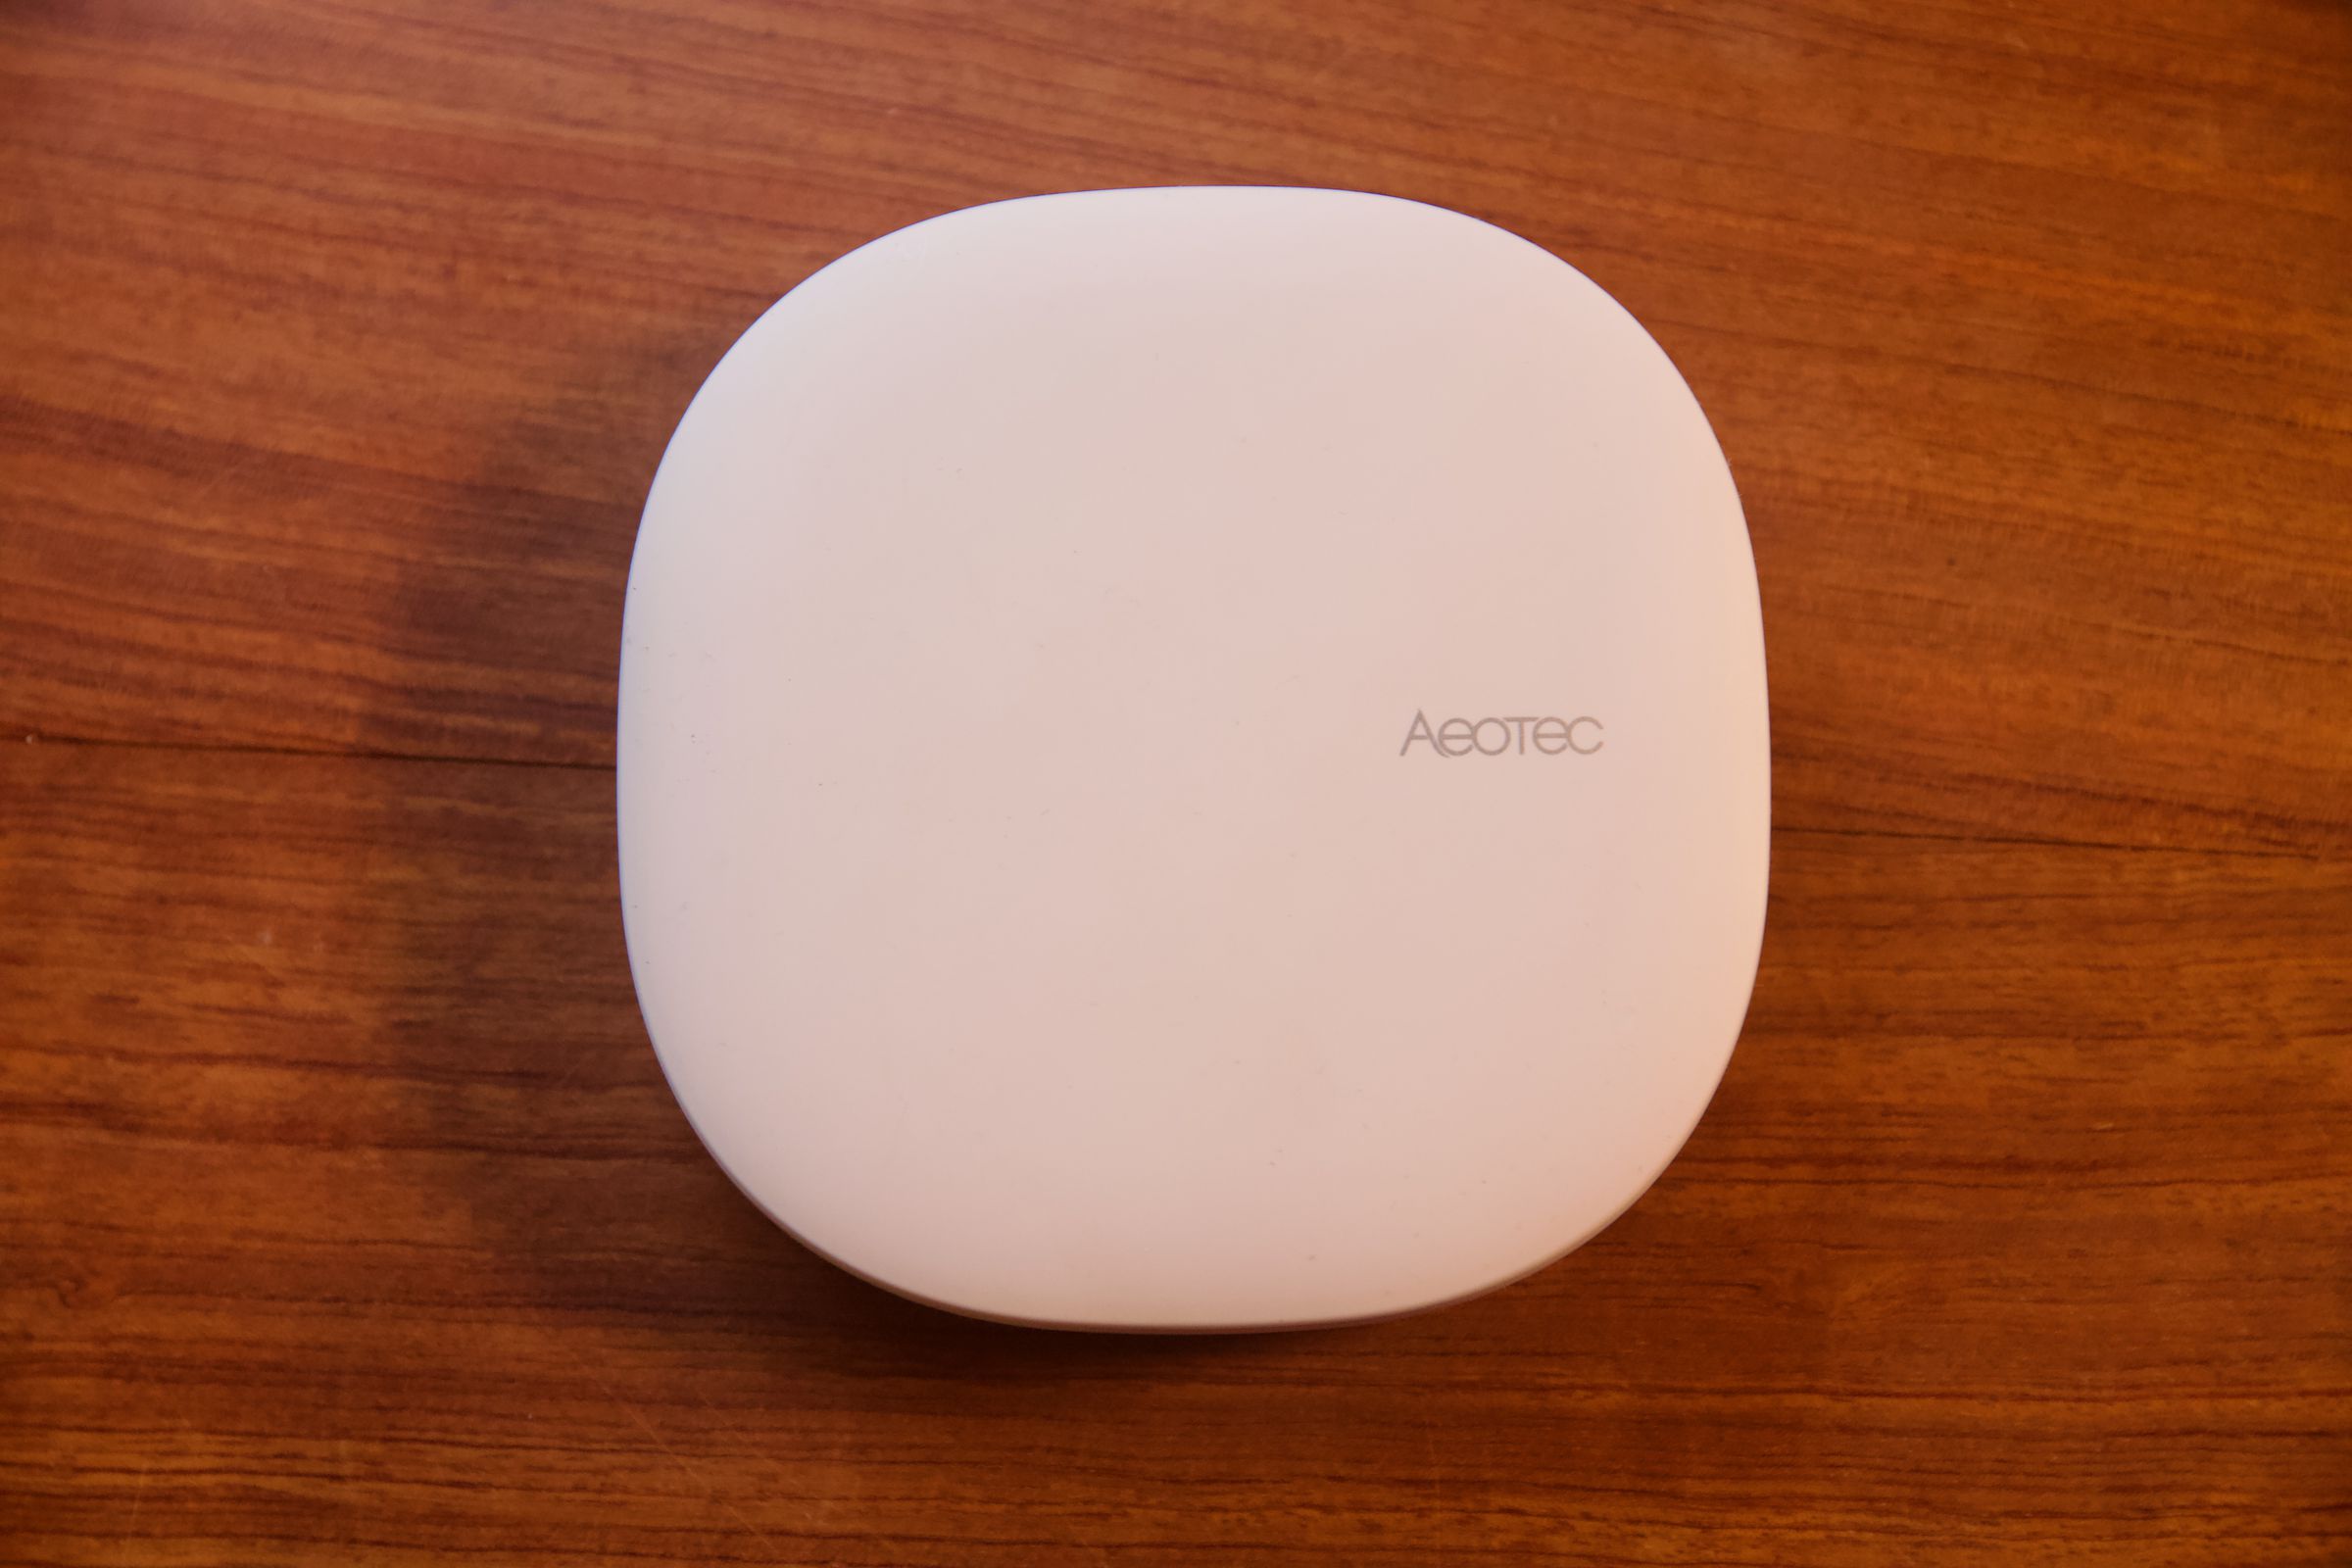 The Aeotec Smart Home Hub on a desk